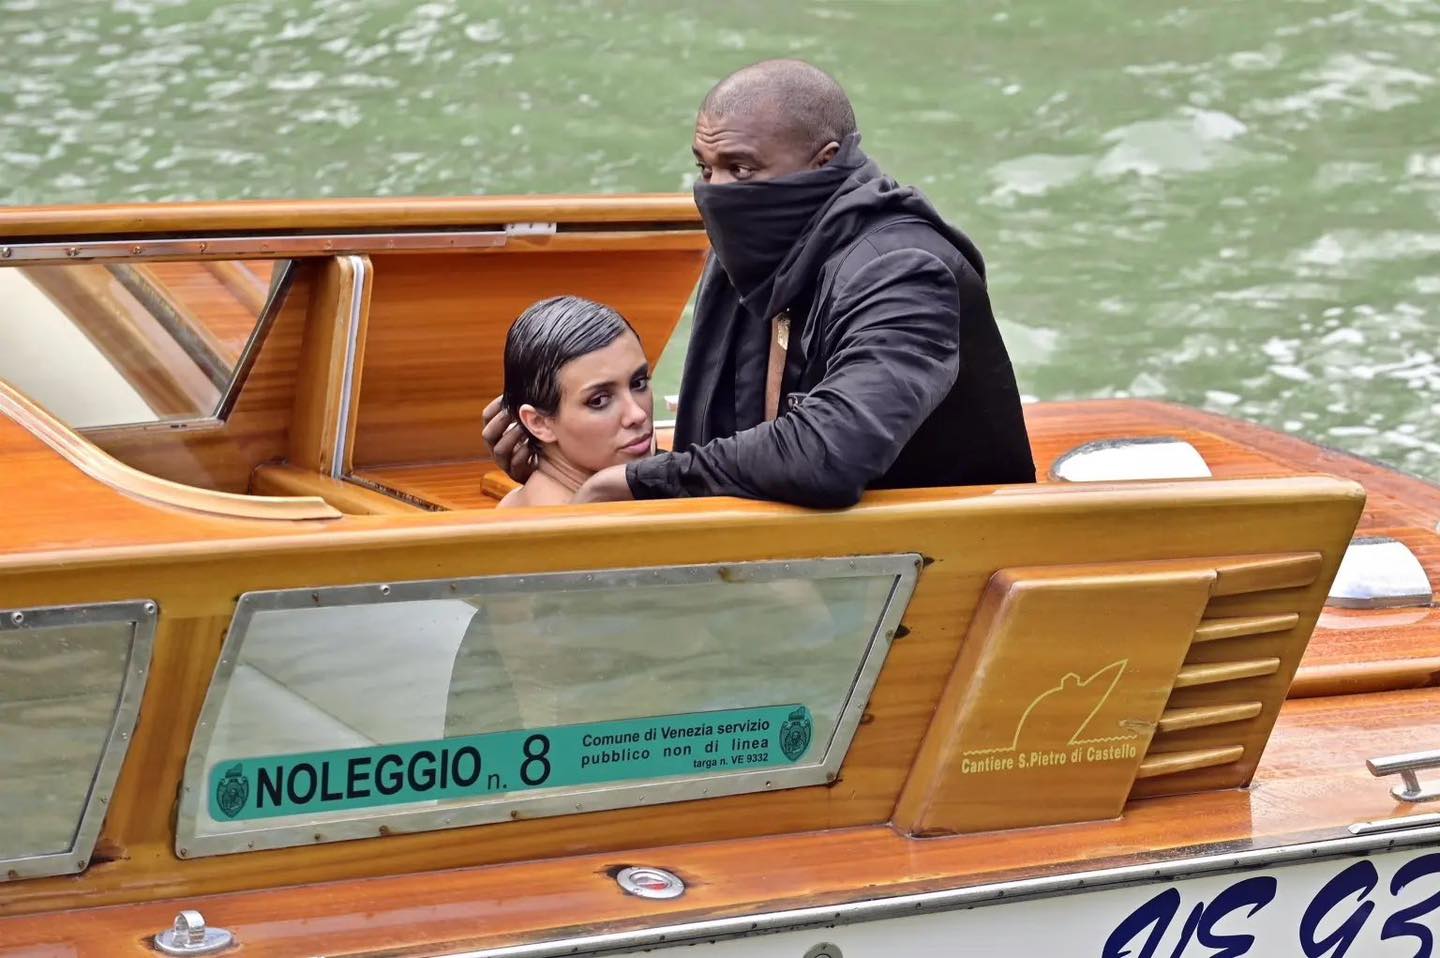 كاني ويست وزوجته على متن القارب في وضع اعتبر خادشاً في ايطاليا